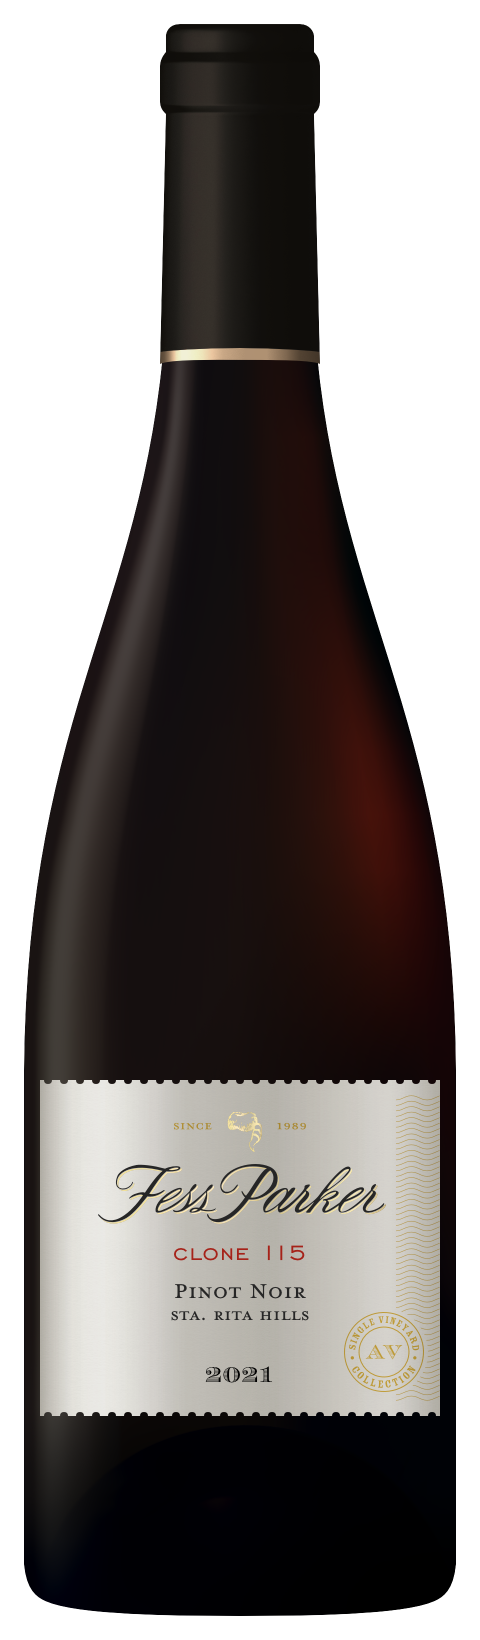 Bottle shot of Clone 115 Pinot Noir